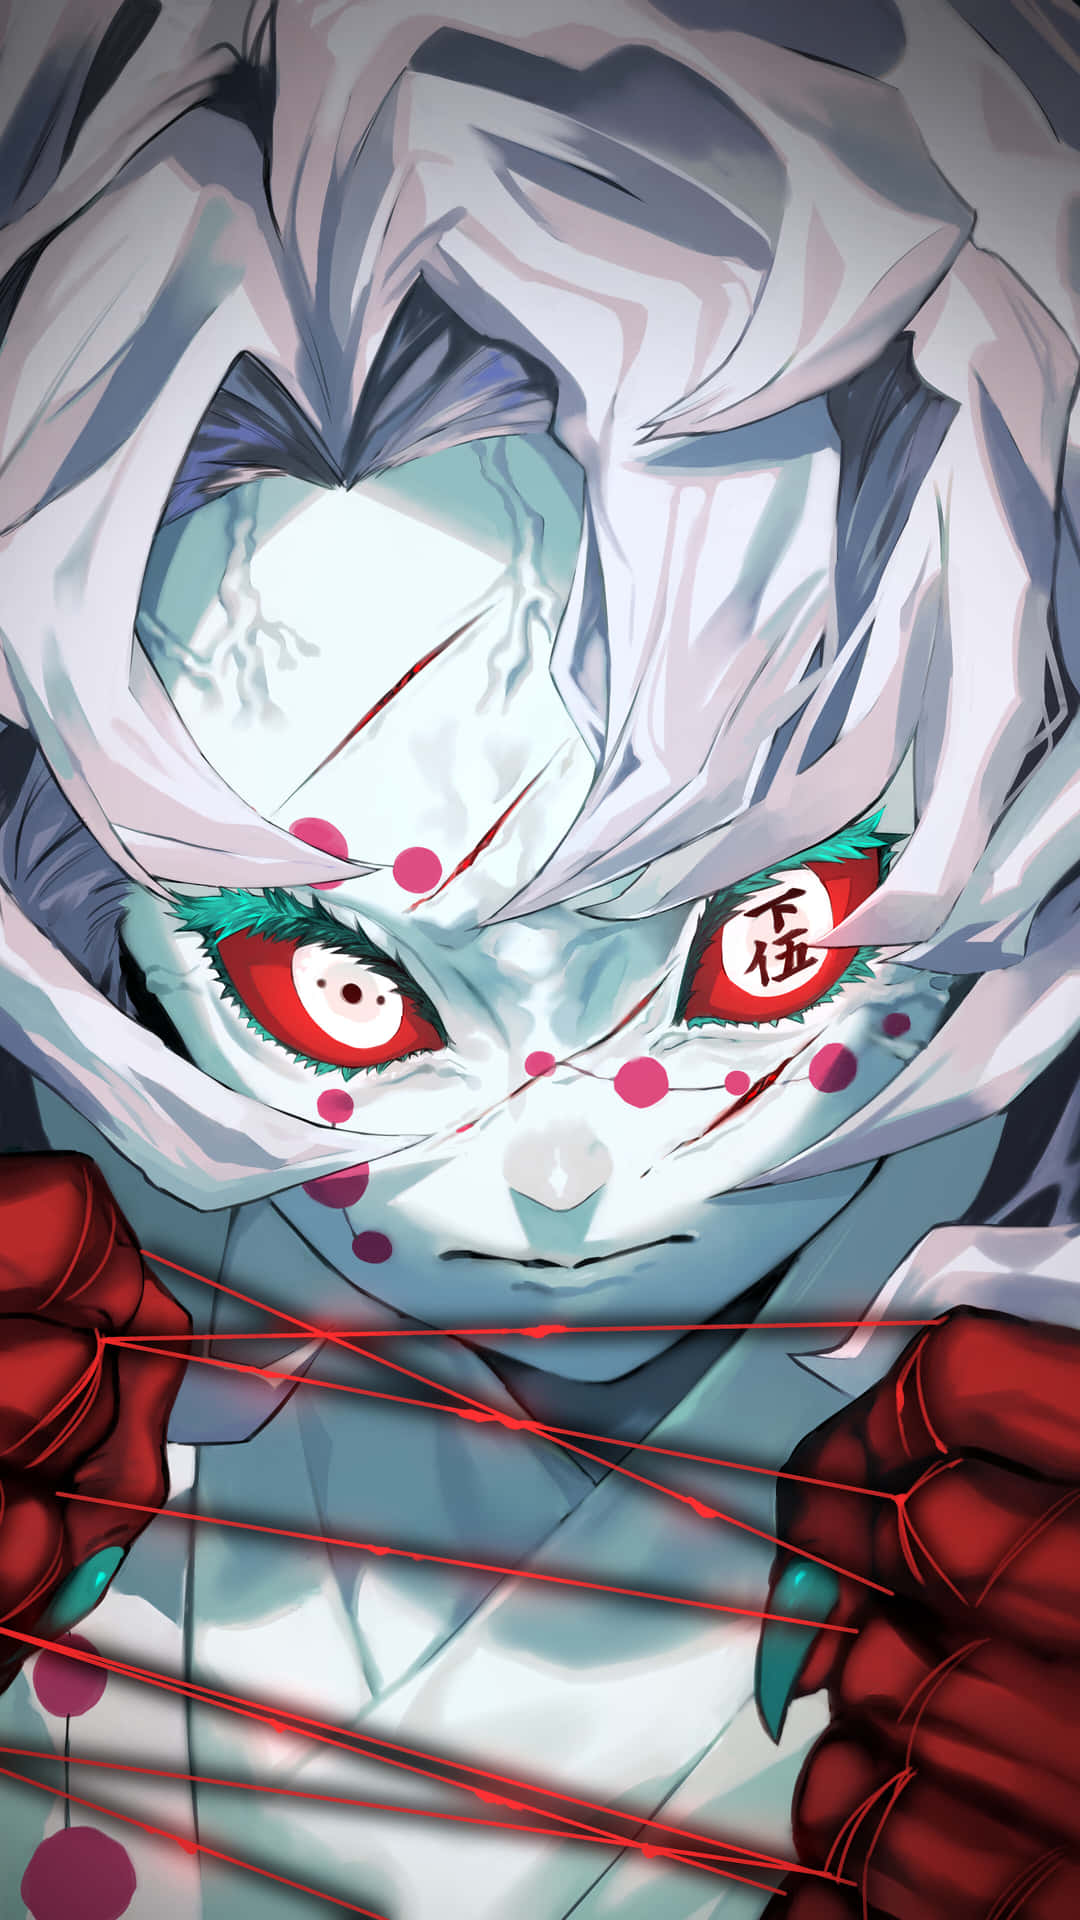 En hvid anime pige med røde øjne og blodige hænder holder en katana. Wallpaper